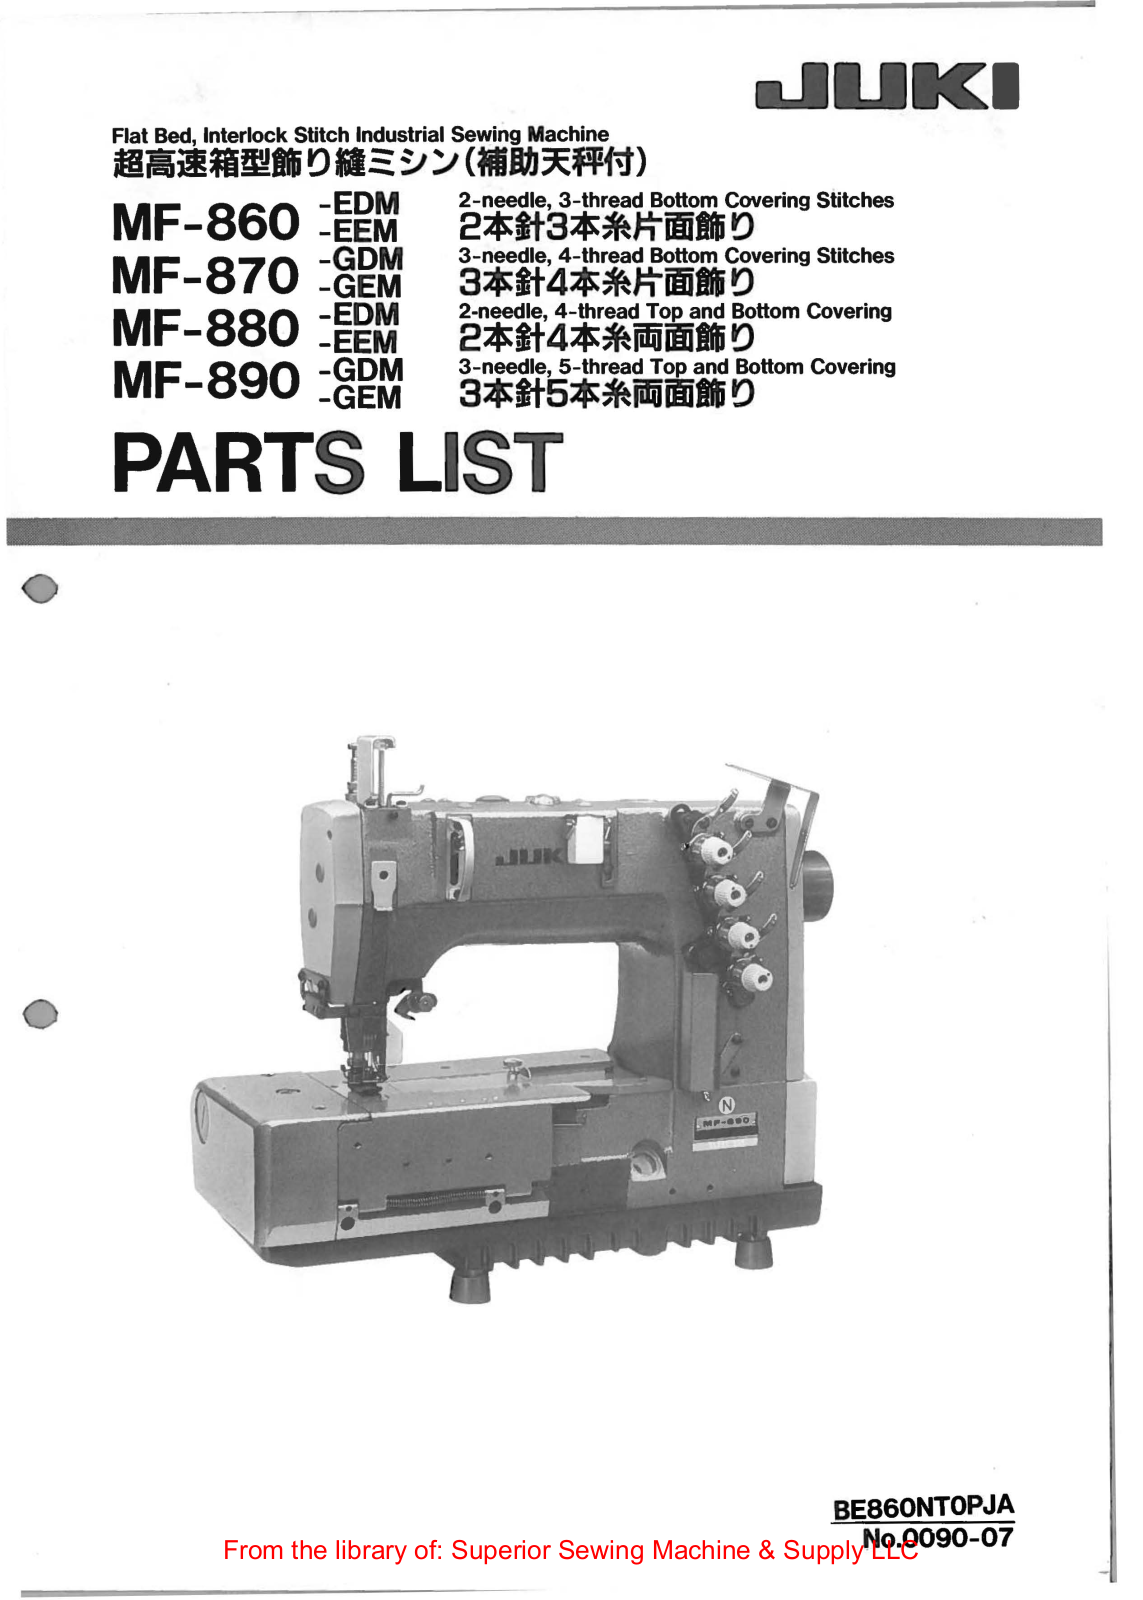 Juki MF-860-EDM, MF-870-GDM, MF-880-EDM, MF-890-GDM, MF-860-EEM Manual